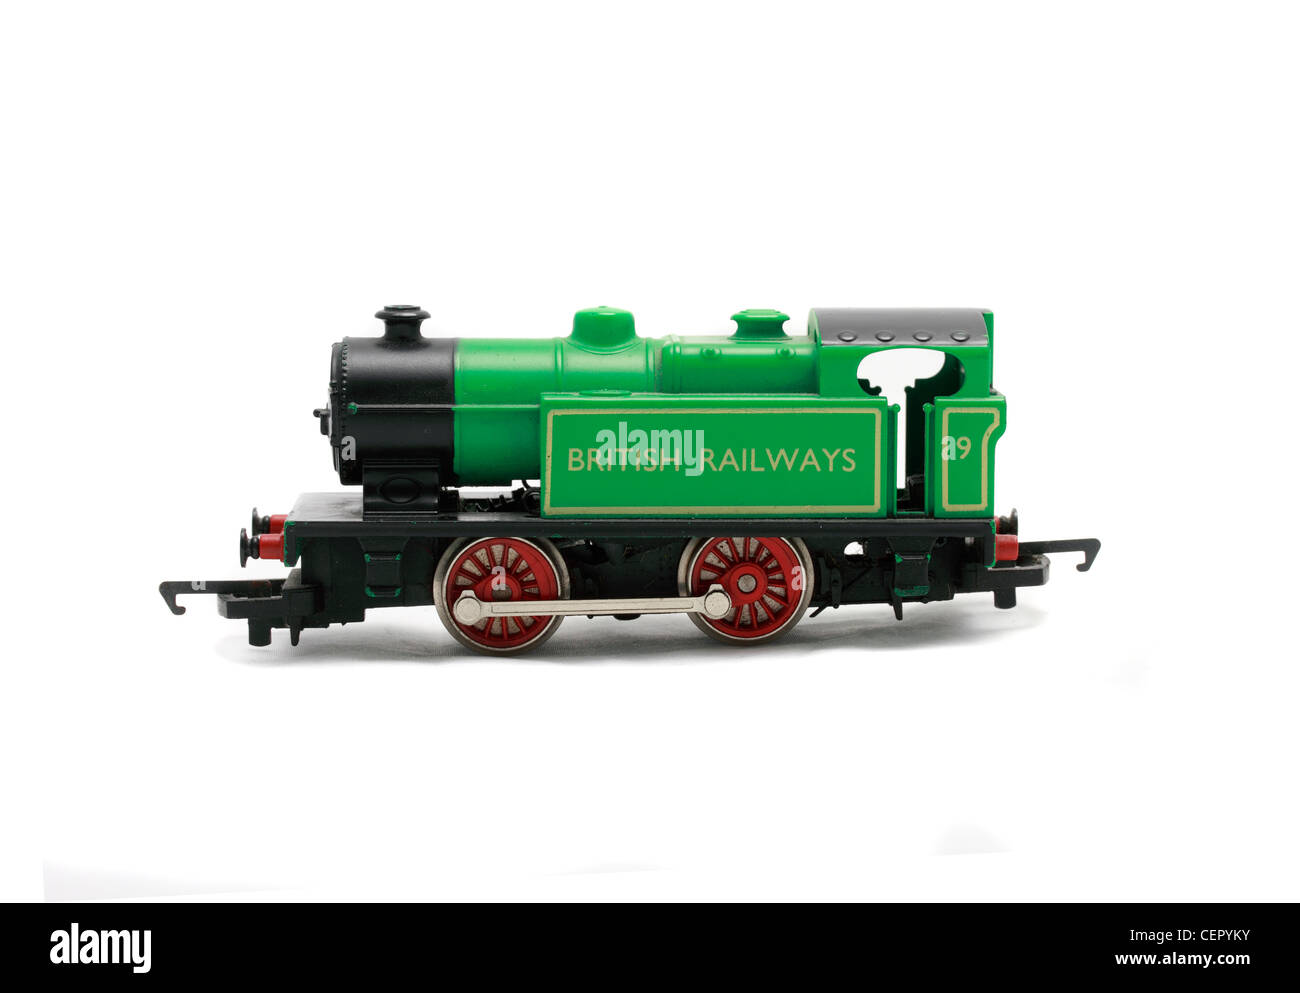 British Railways 0-4-0 locomotive à vapeur, 00 gauge Hornby trains train miniature Banque D'Images